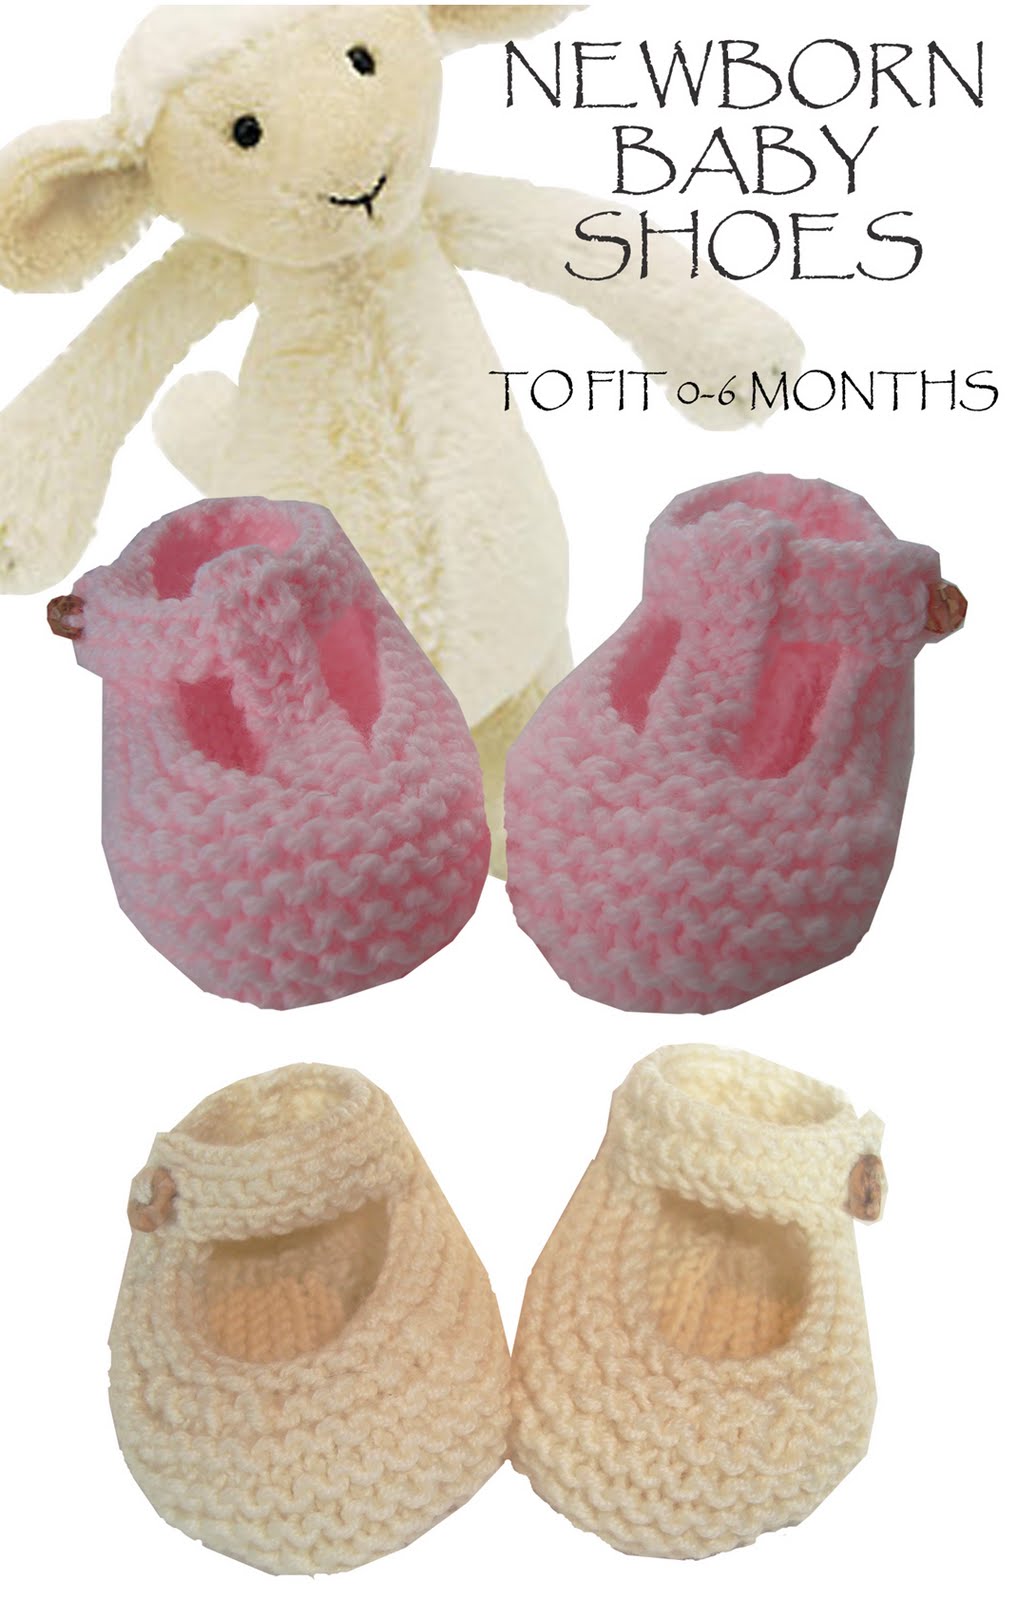 Garter Stitch Baby Shoes Free Knitting Pattern